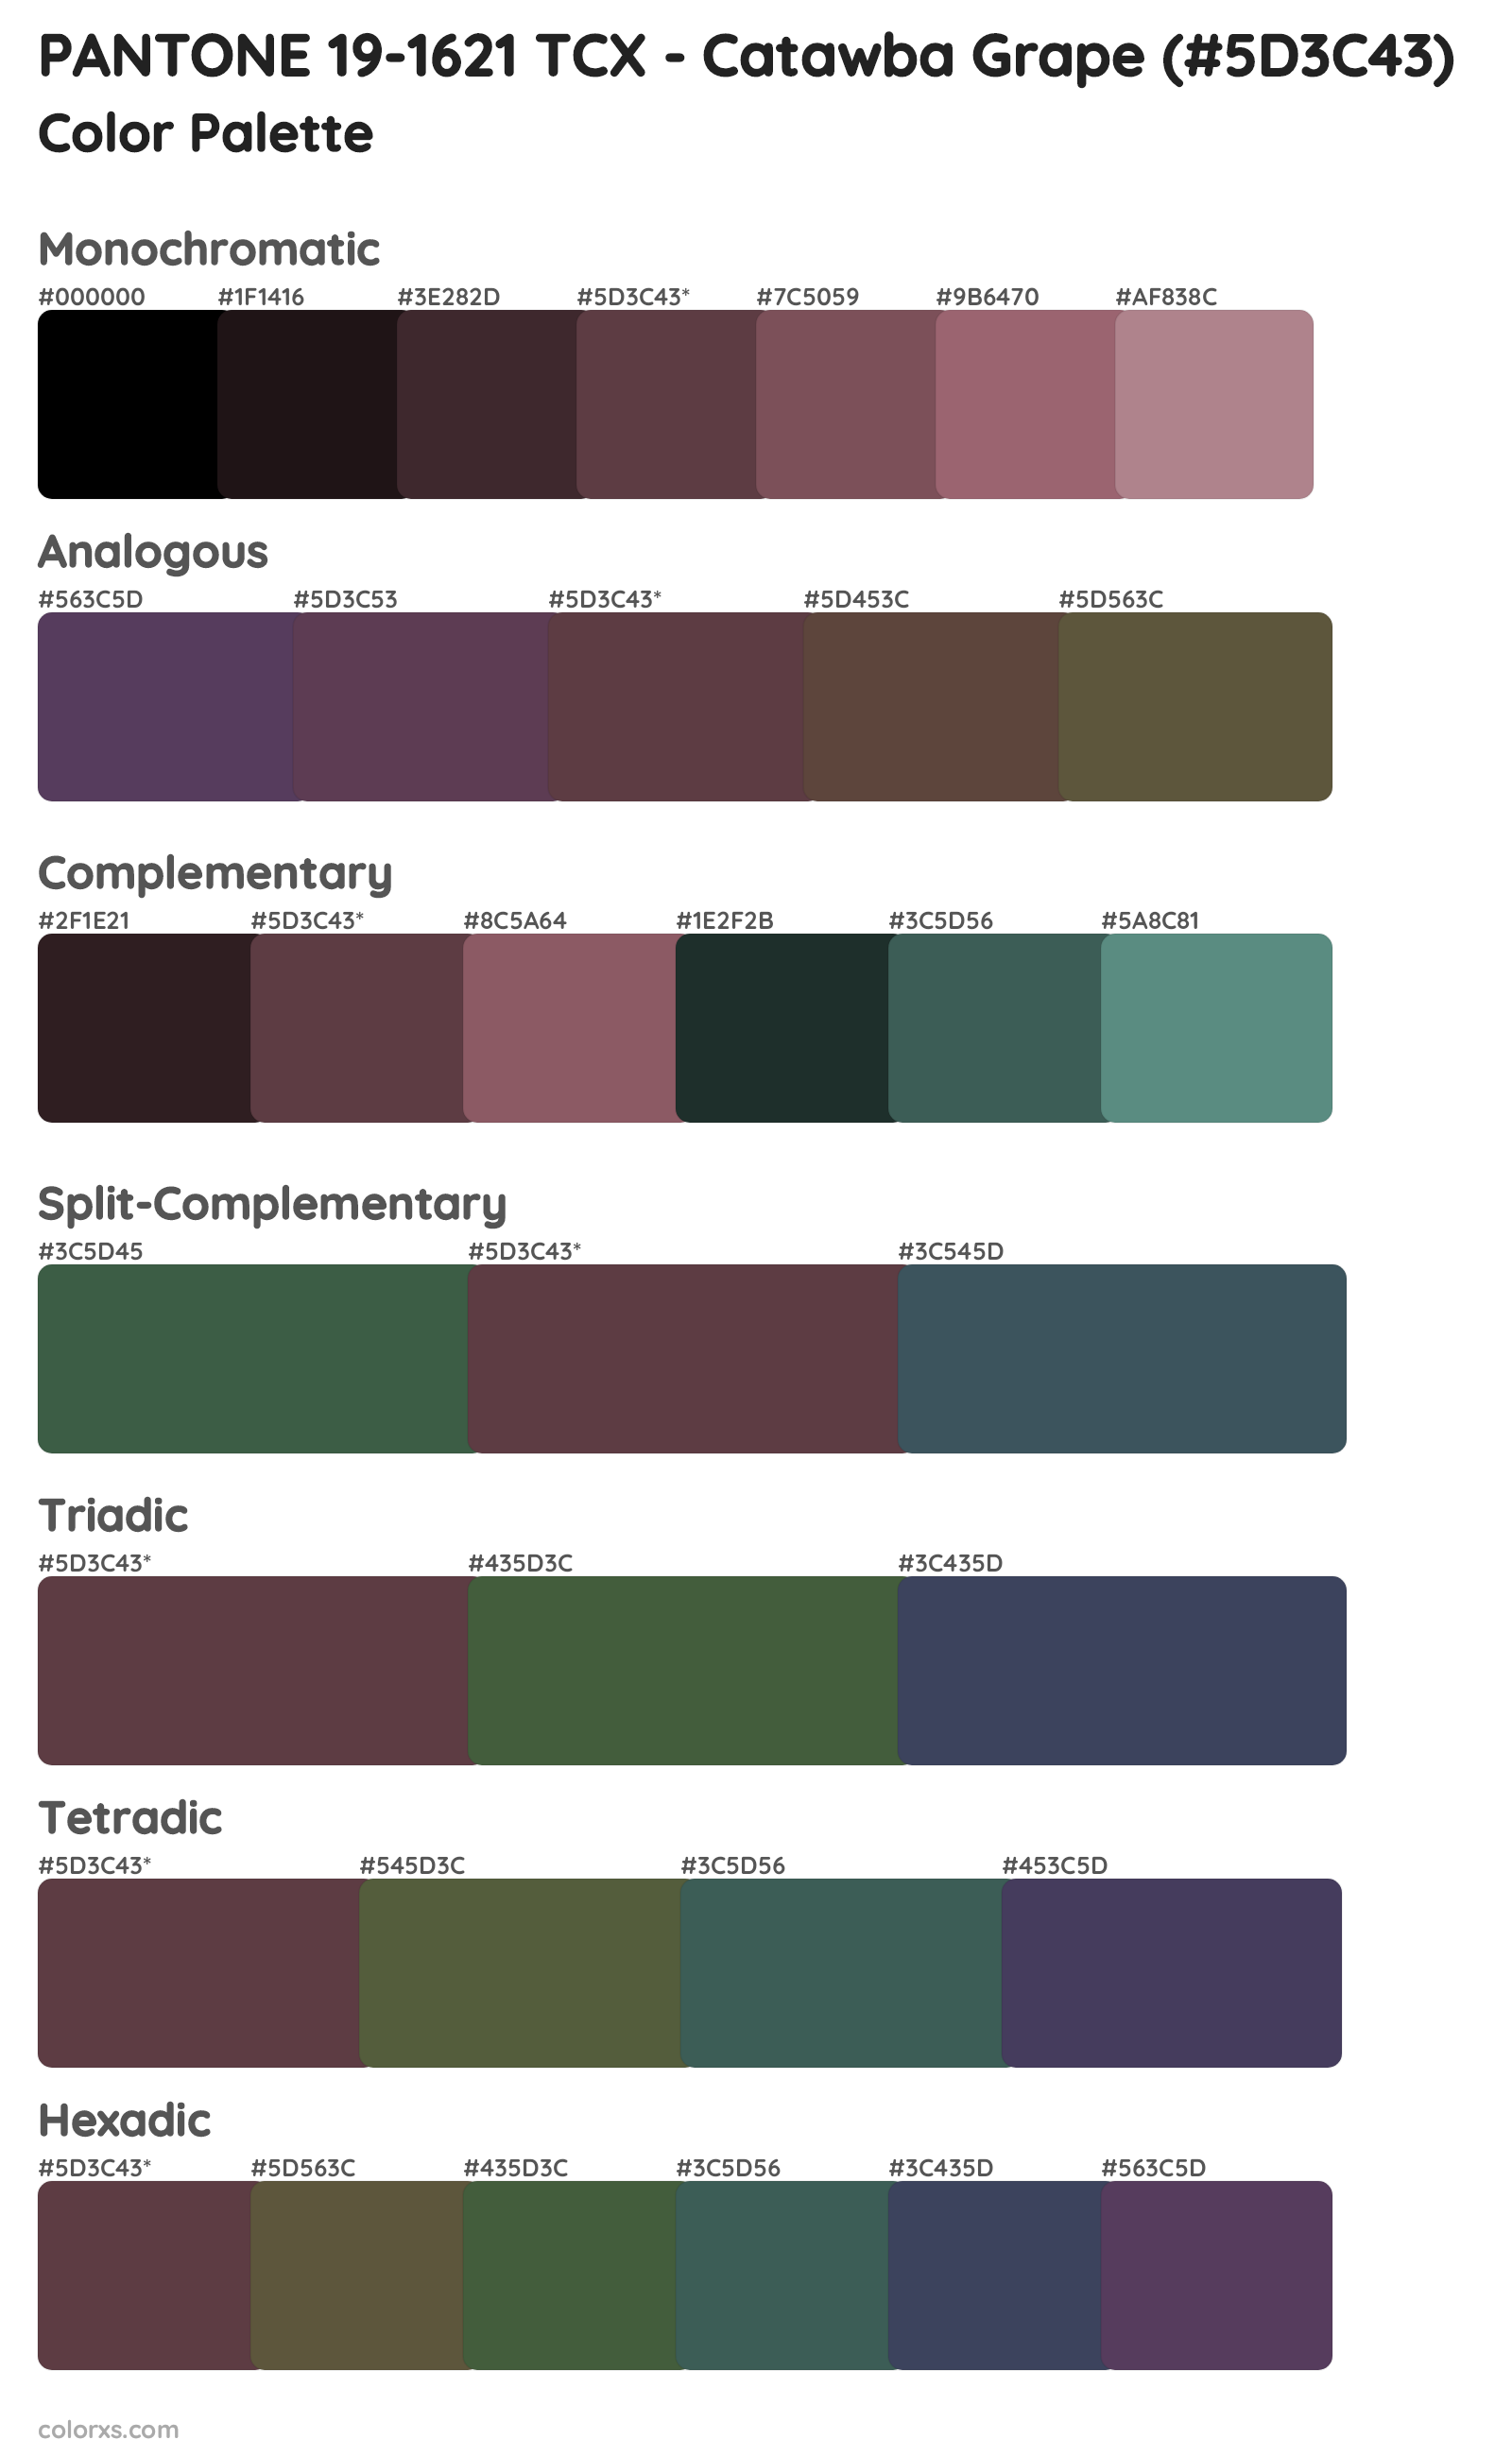 PANTONE 19-1621 TCX - Catawba Grape Color Scheme Palettes